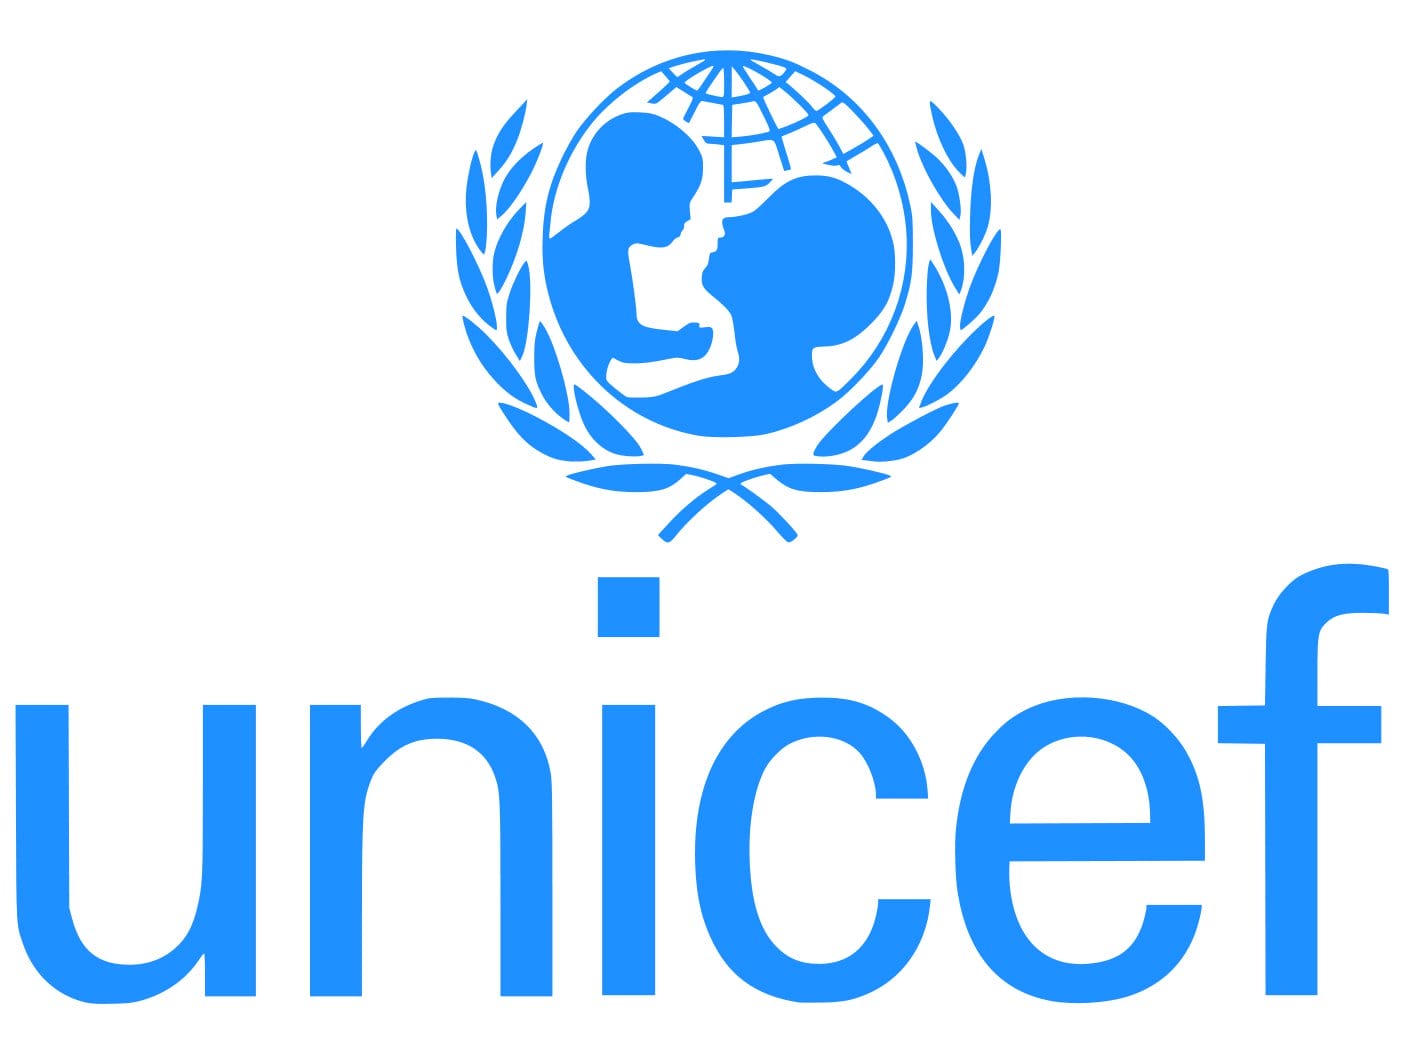 Retrocessos impressionantes na saúde de mulheres, crianças e adolescentes revelados em nova análise da ONU